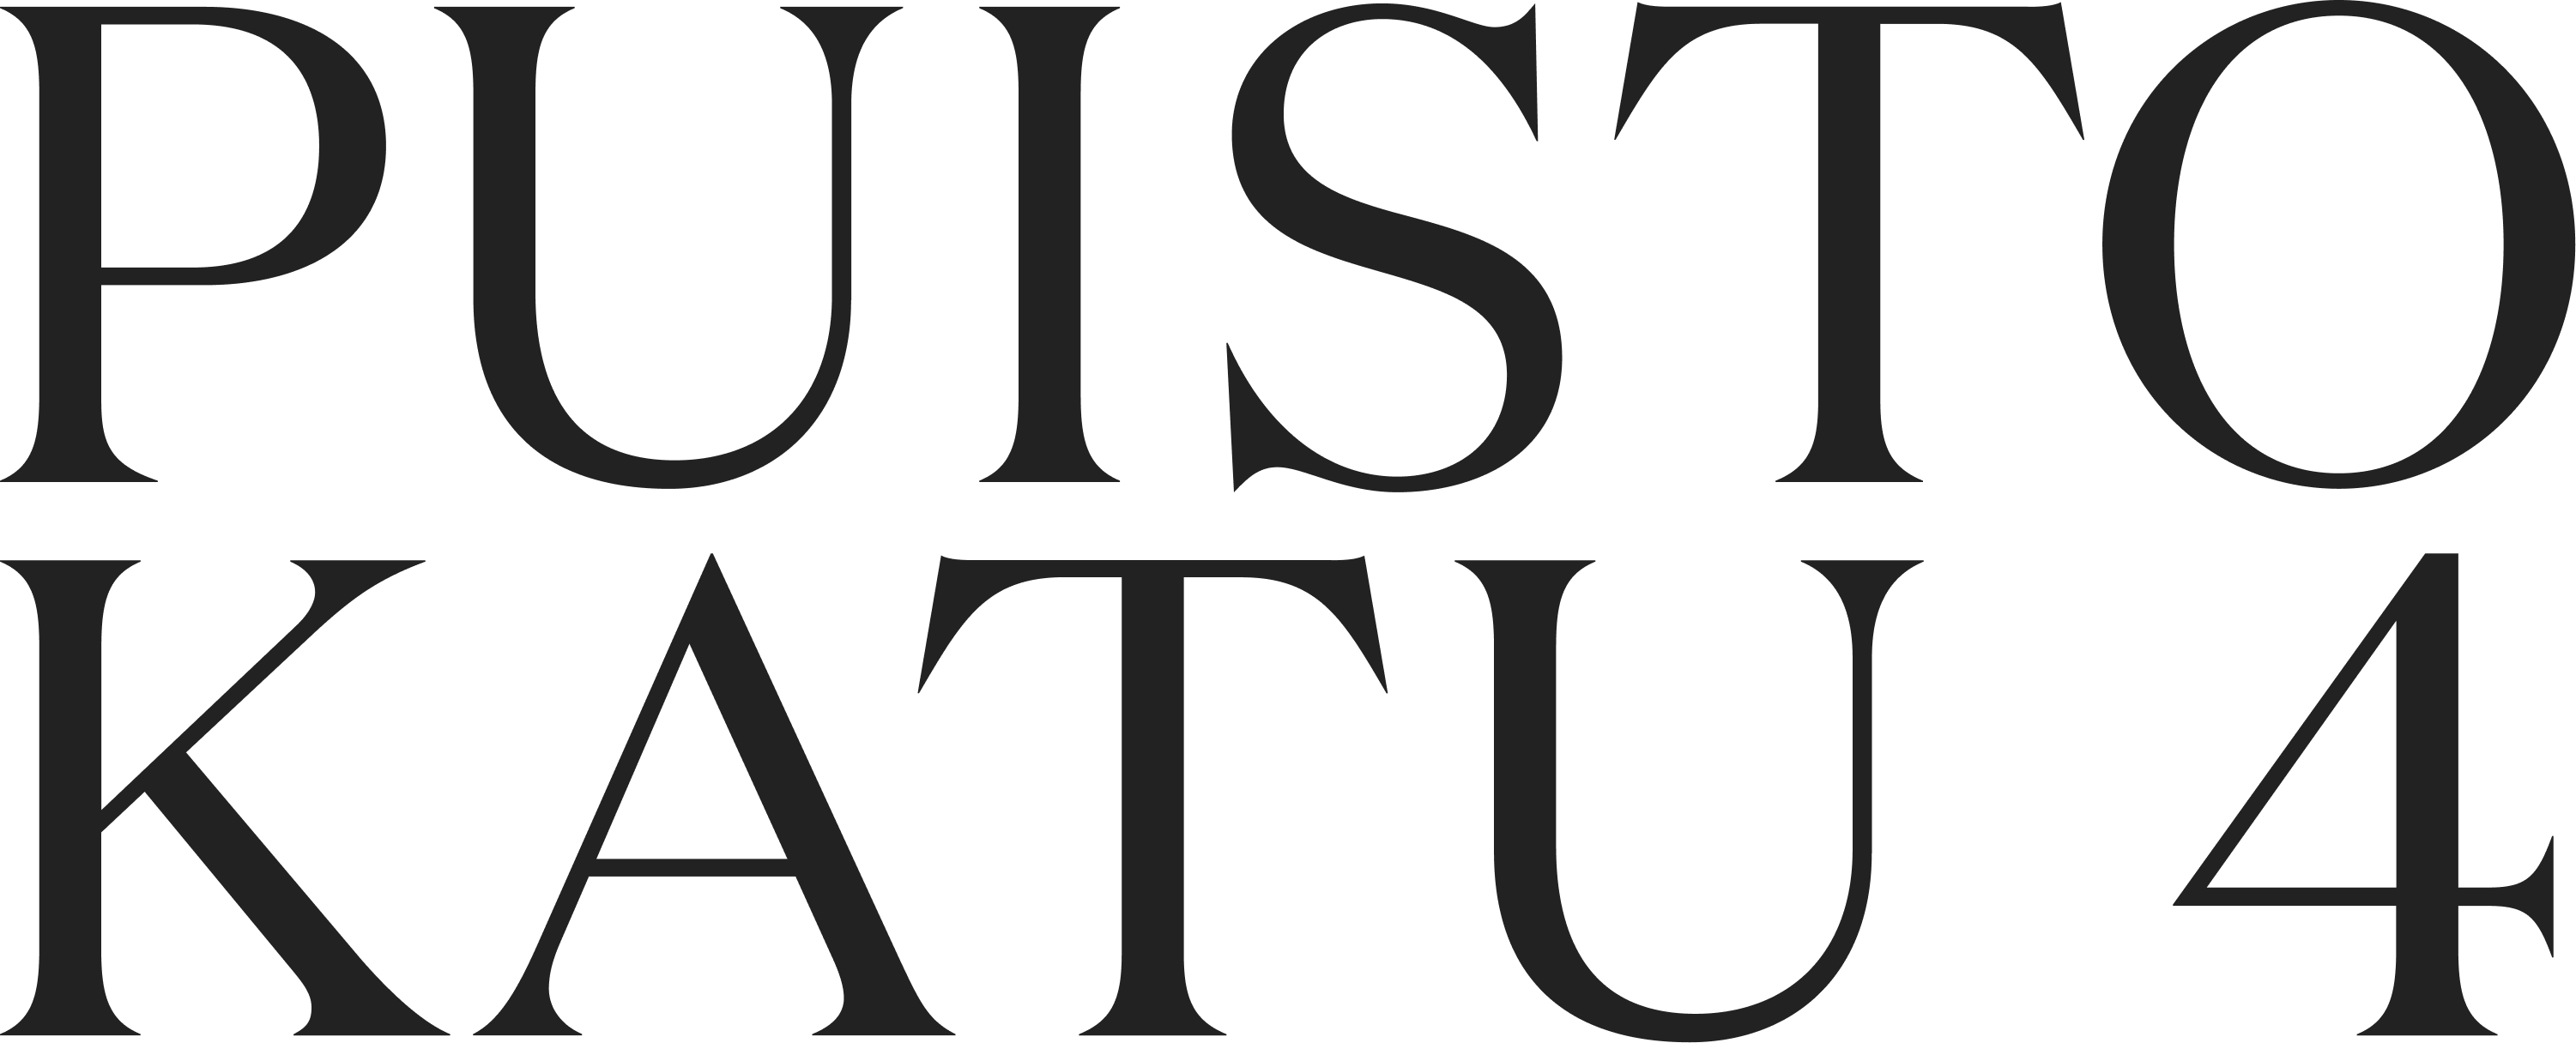 Puistokatu 4 -logo